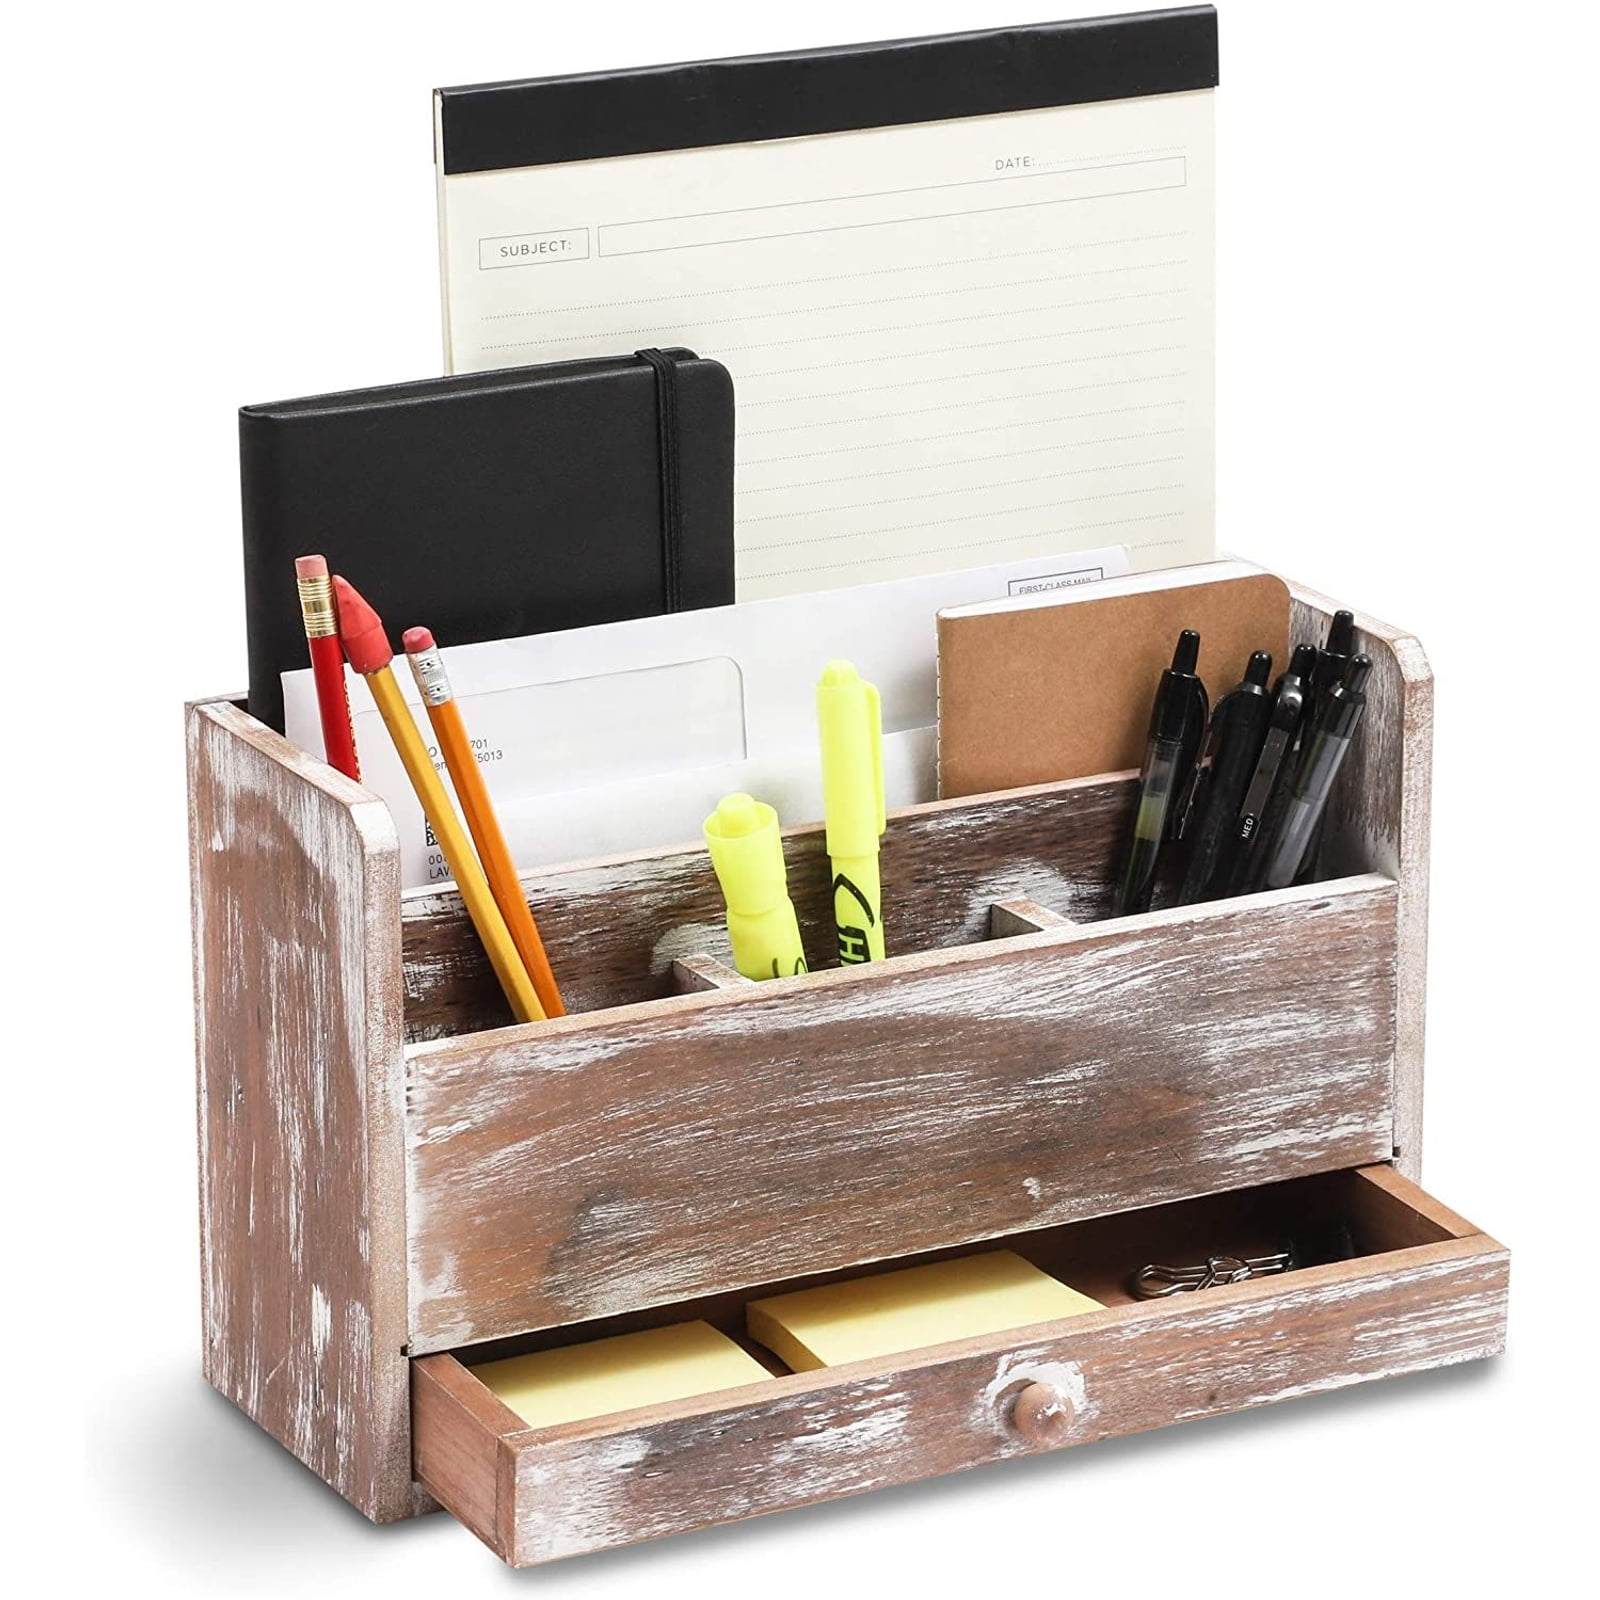 3 Compartment Torched Wood Desktop Office Supplies Desk Organizer Storage Holder 